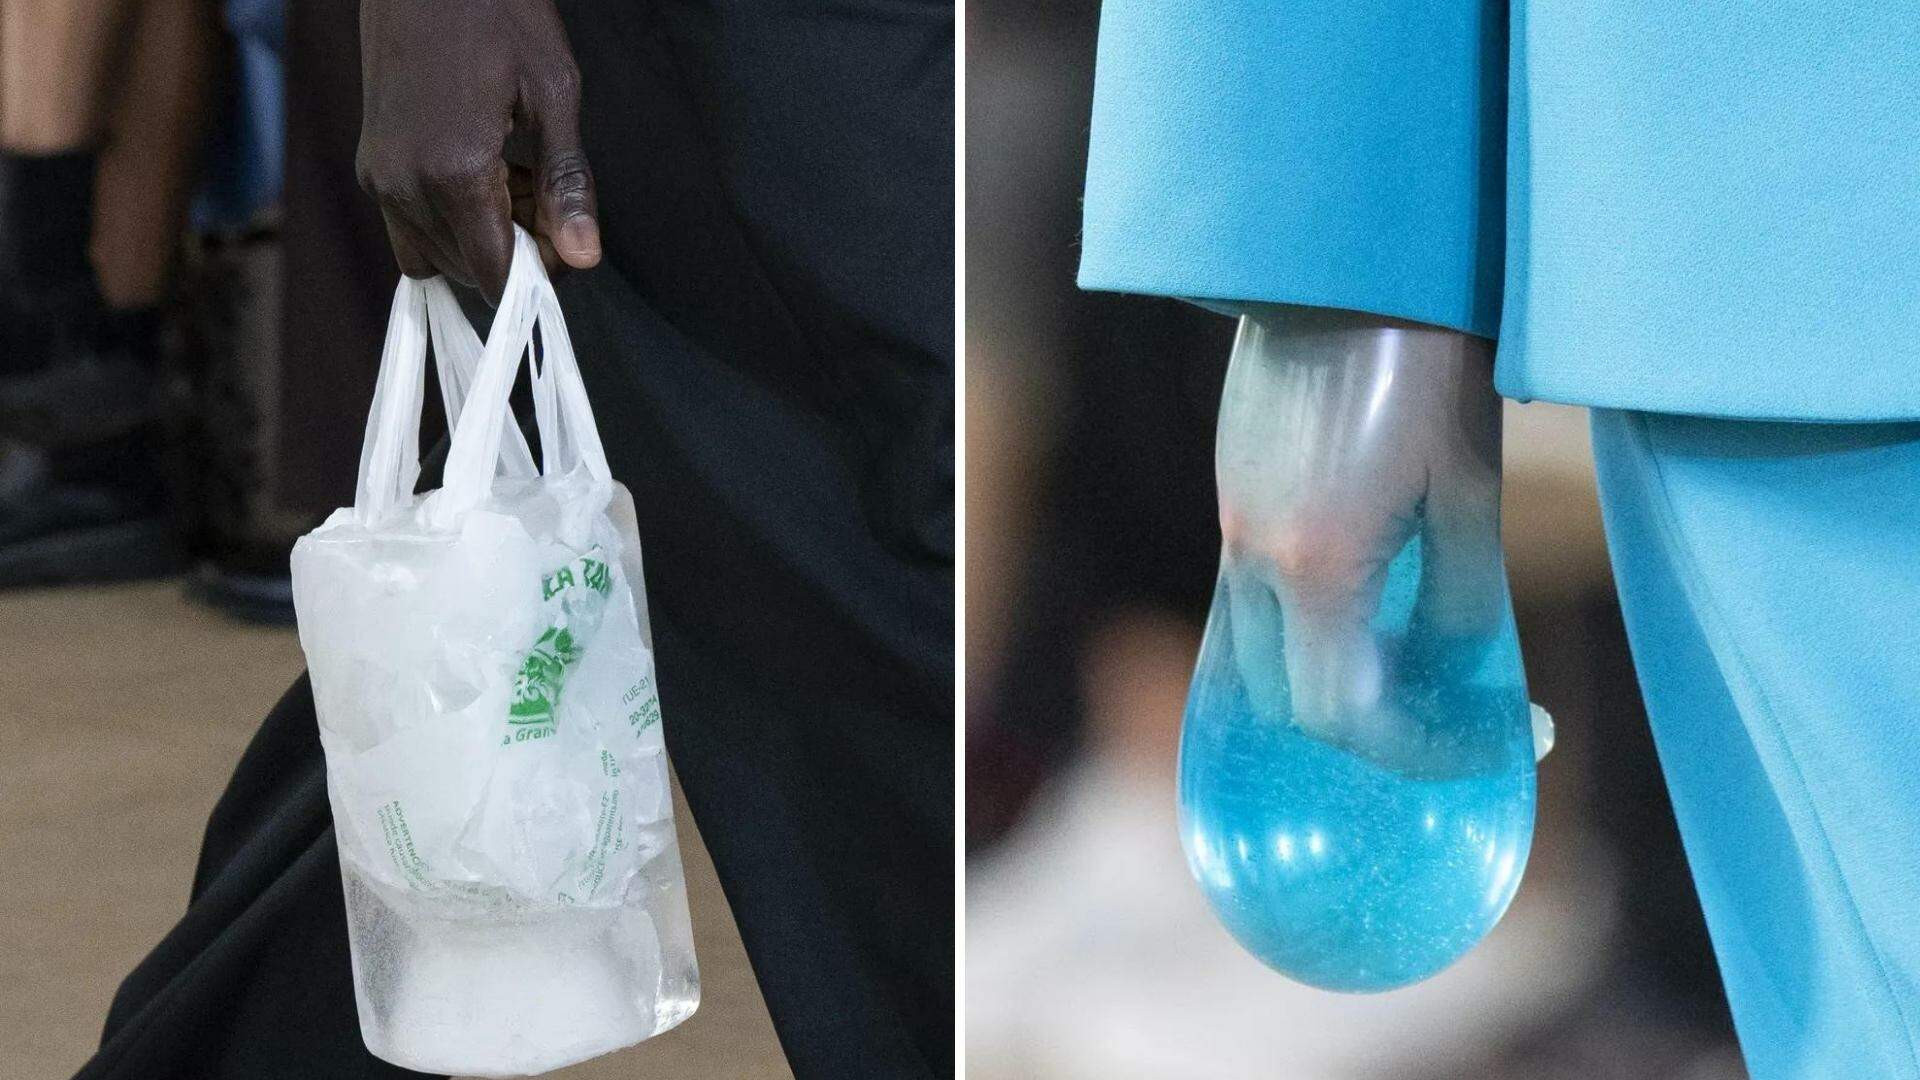 Inovador? Preservativos e sacolas congeladas viram acessórios em desfile internacional - Metropolitana FM